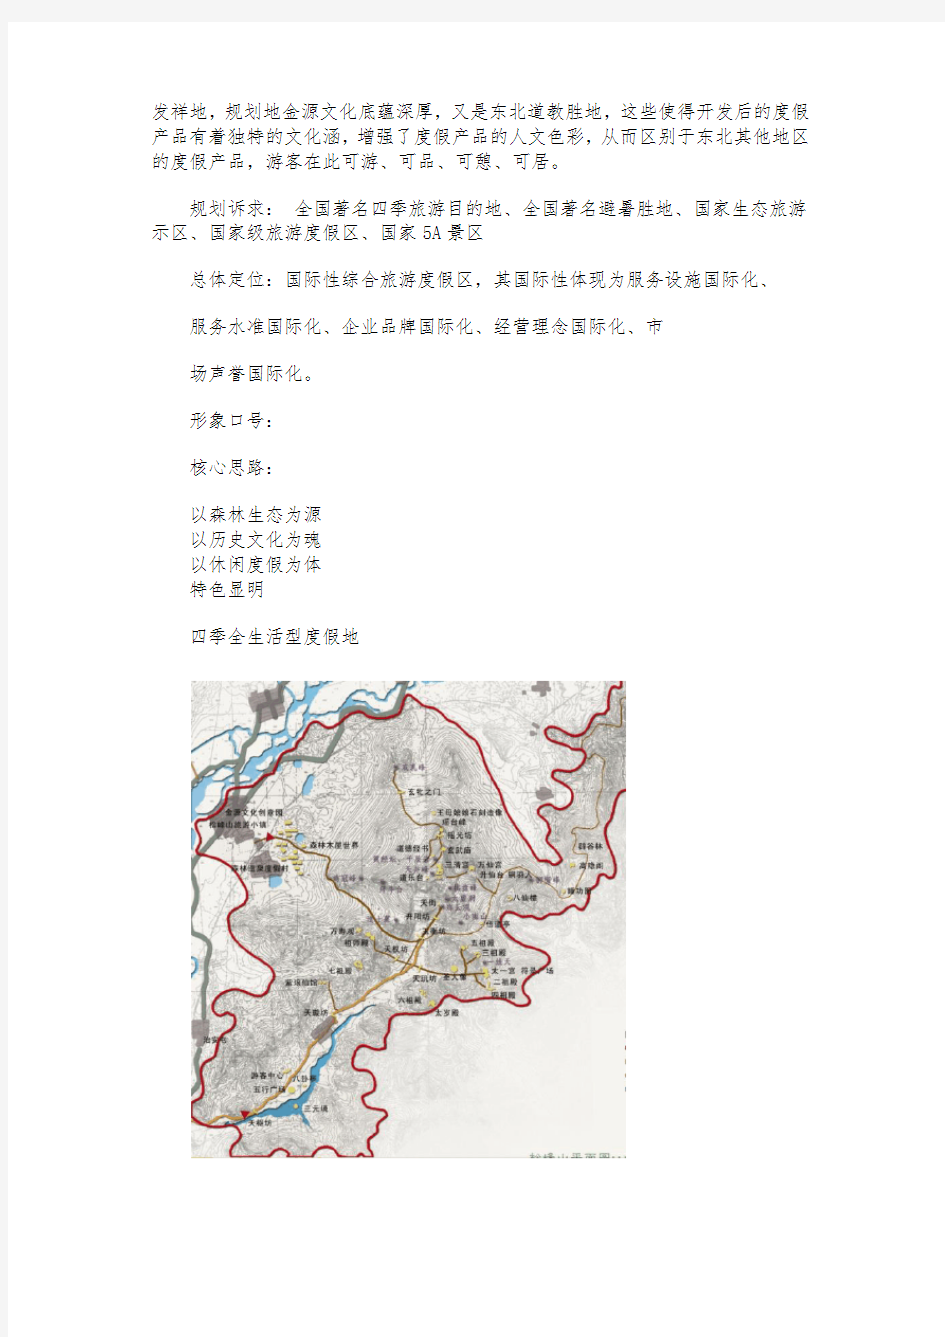 黑龙江哈尔滨金龙山国际旅游度假区总体设计规划